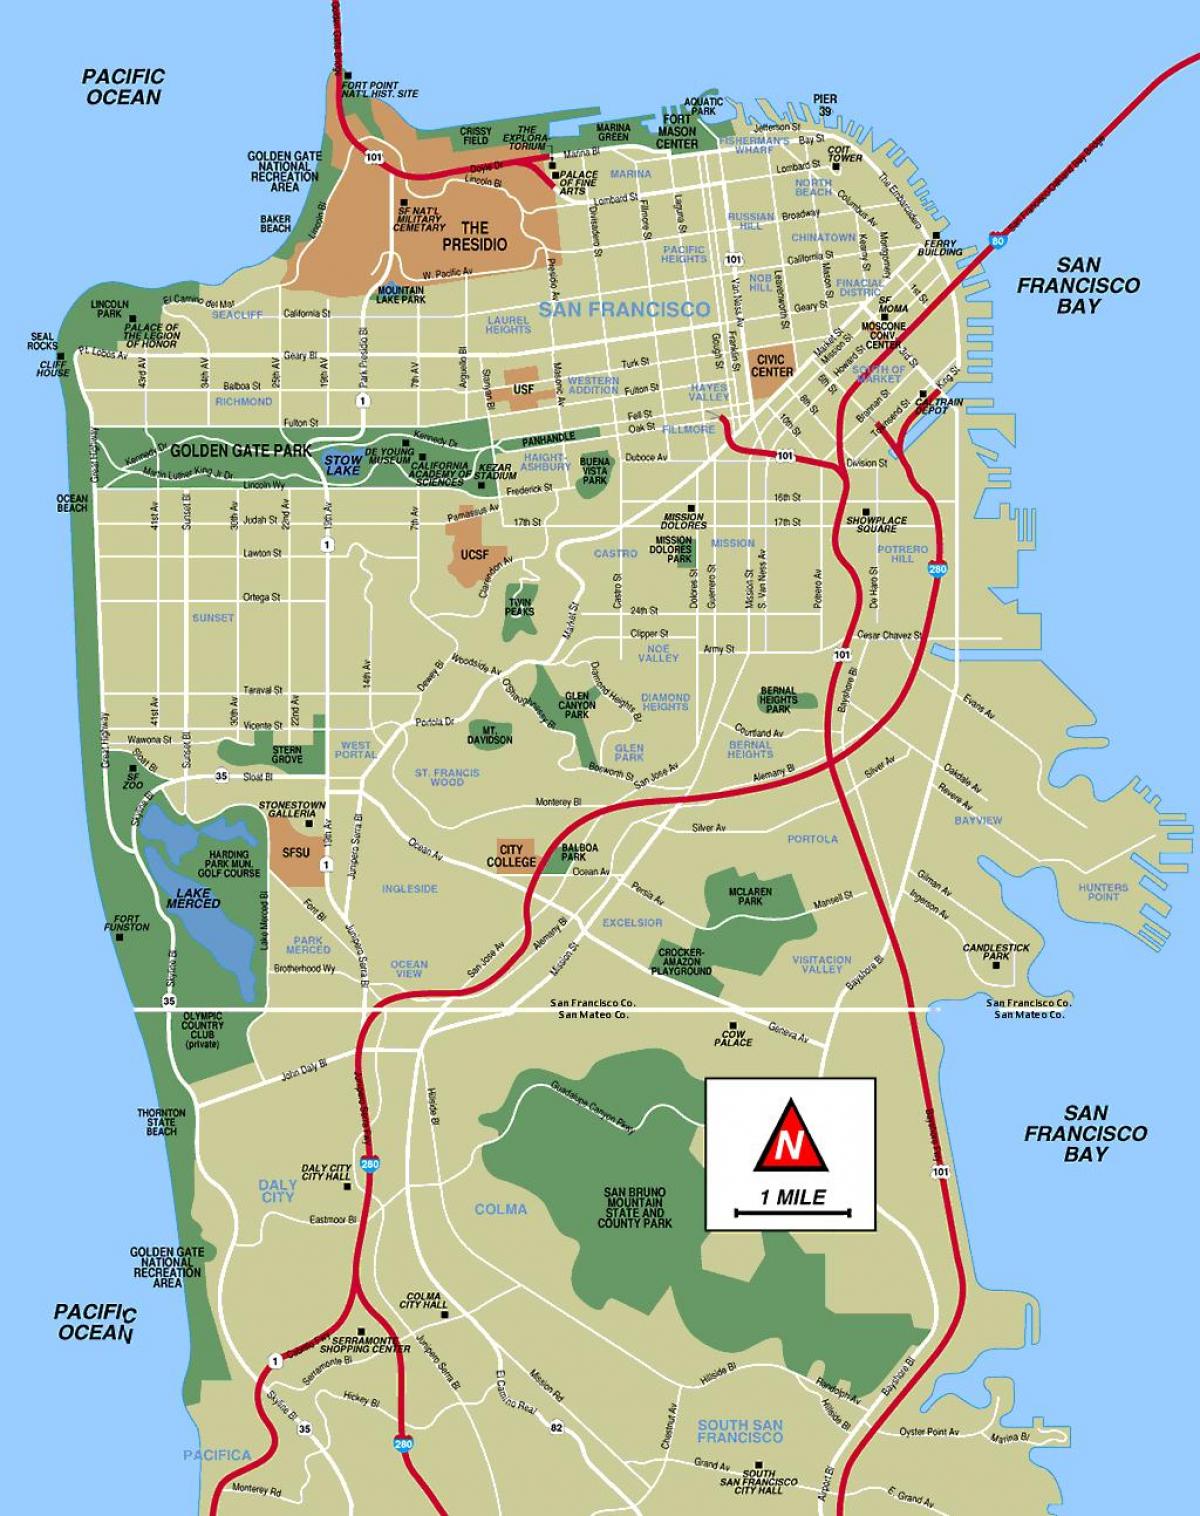 旧金山的景点地图